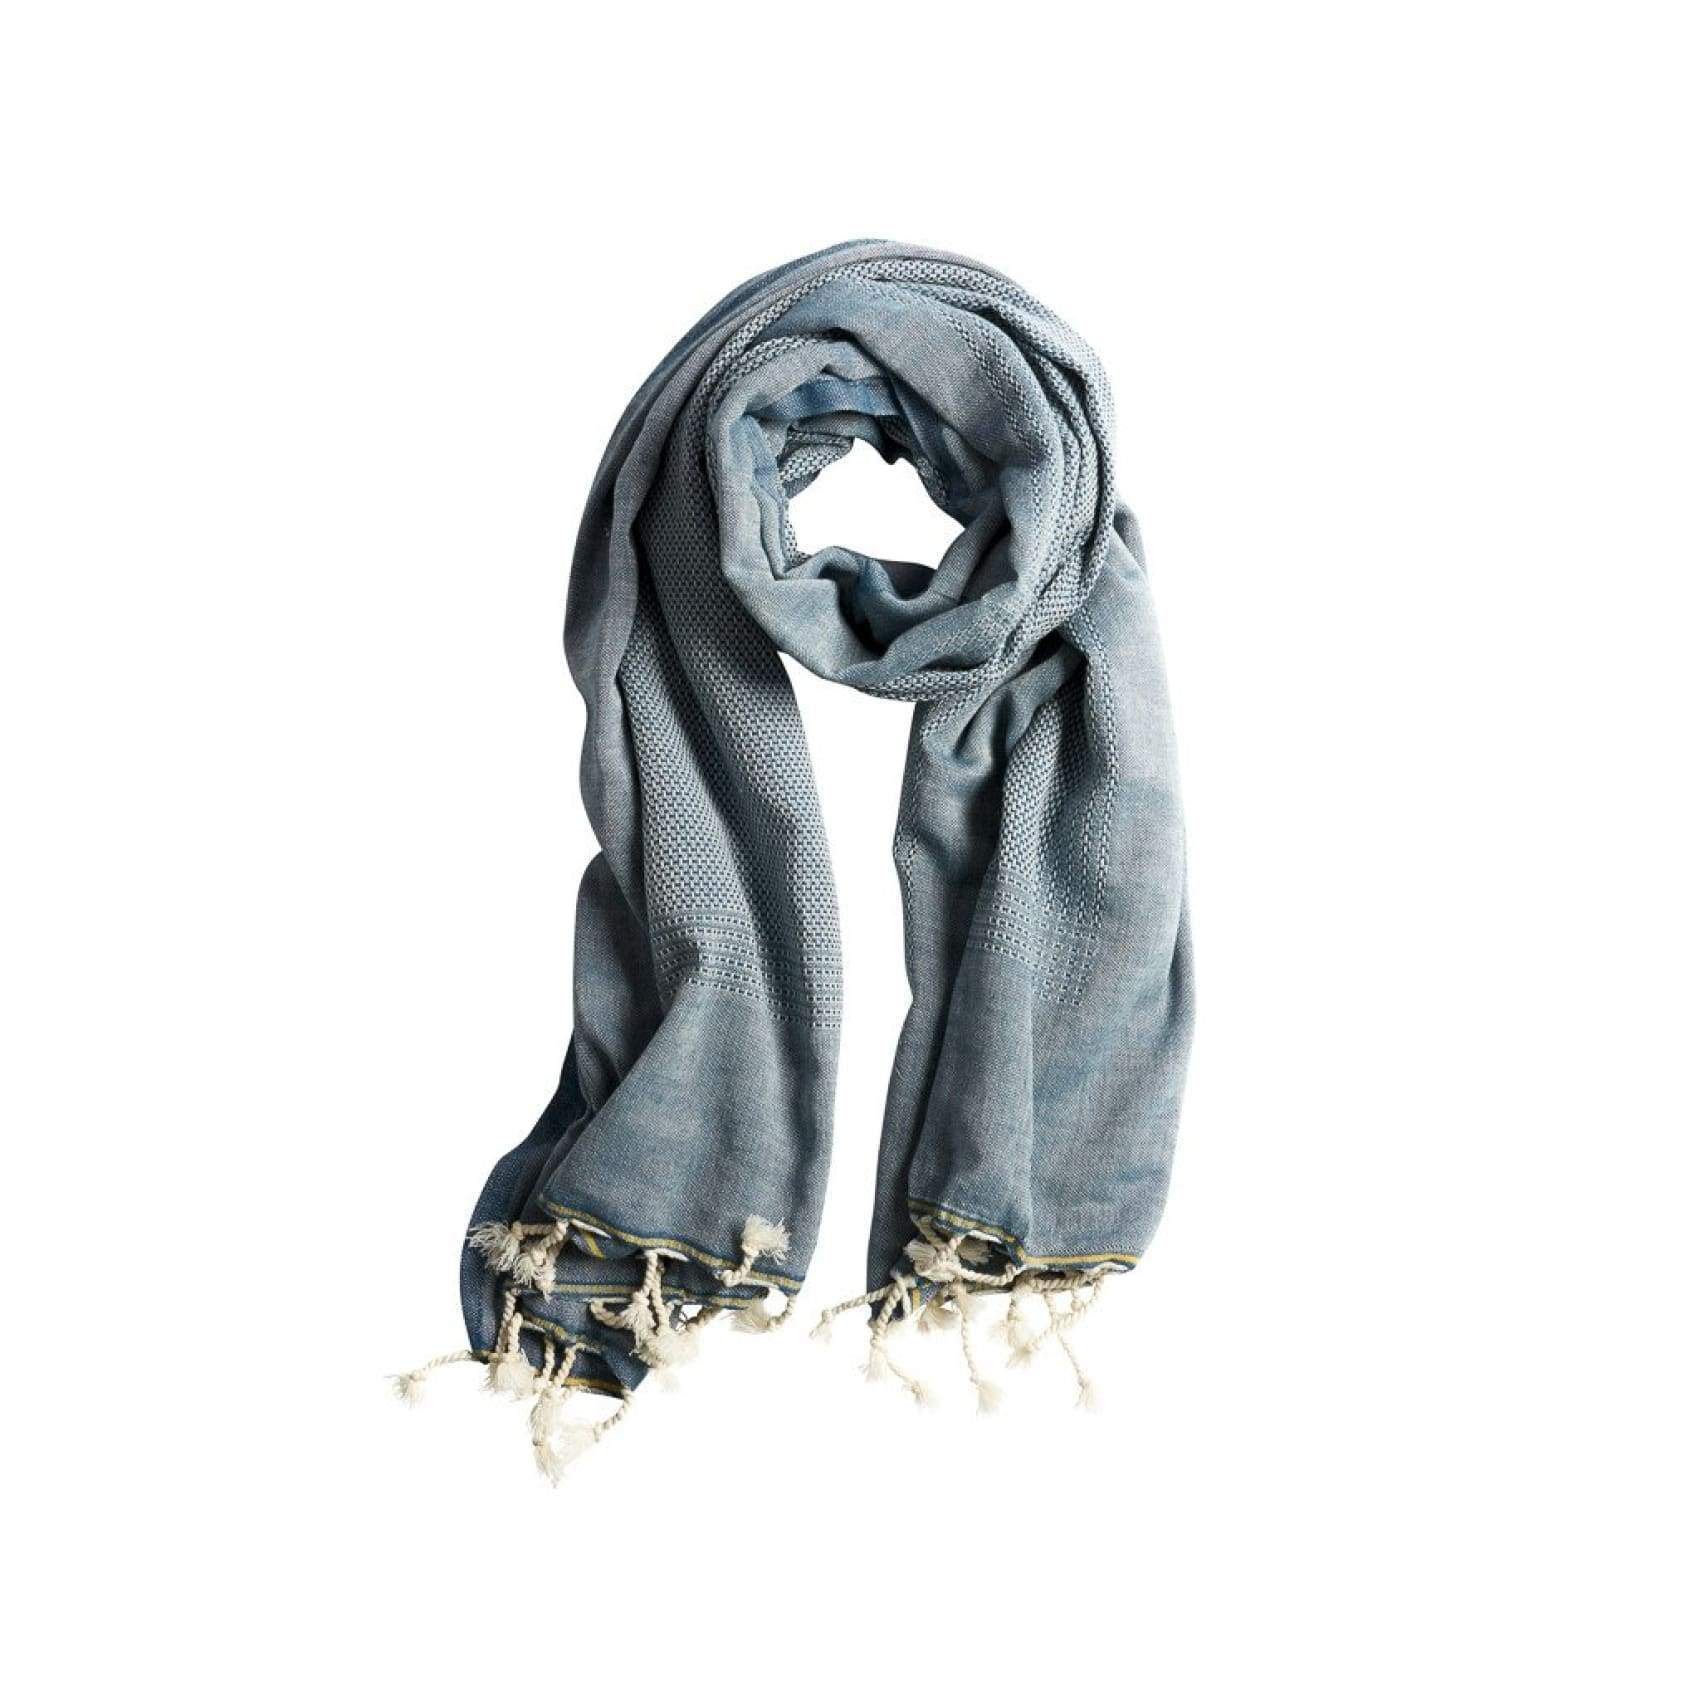 ekin-lightweight-cotton-scarves-blue-scarf-teal-luks-linen-stole-248_5a274293-f105-49e8-a2d4-aa6eb2a54d81.jpg